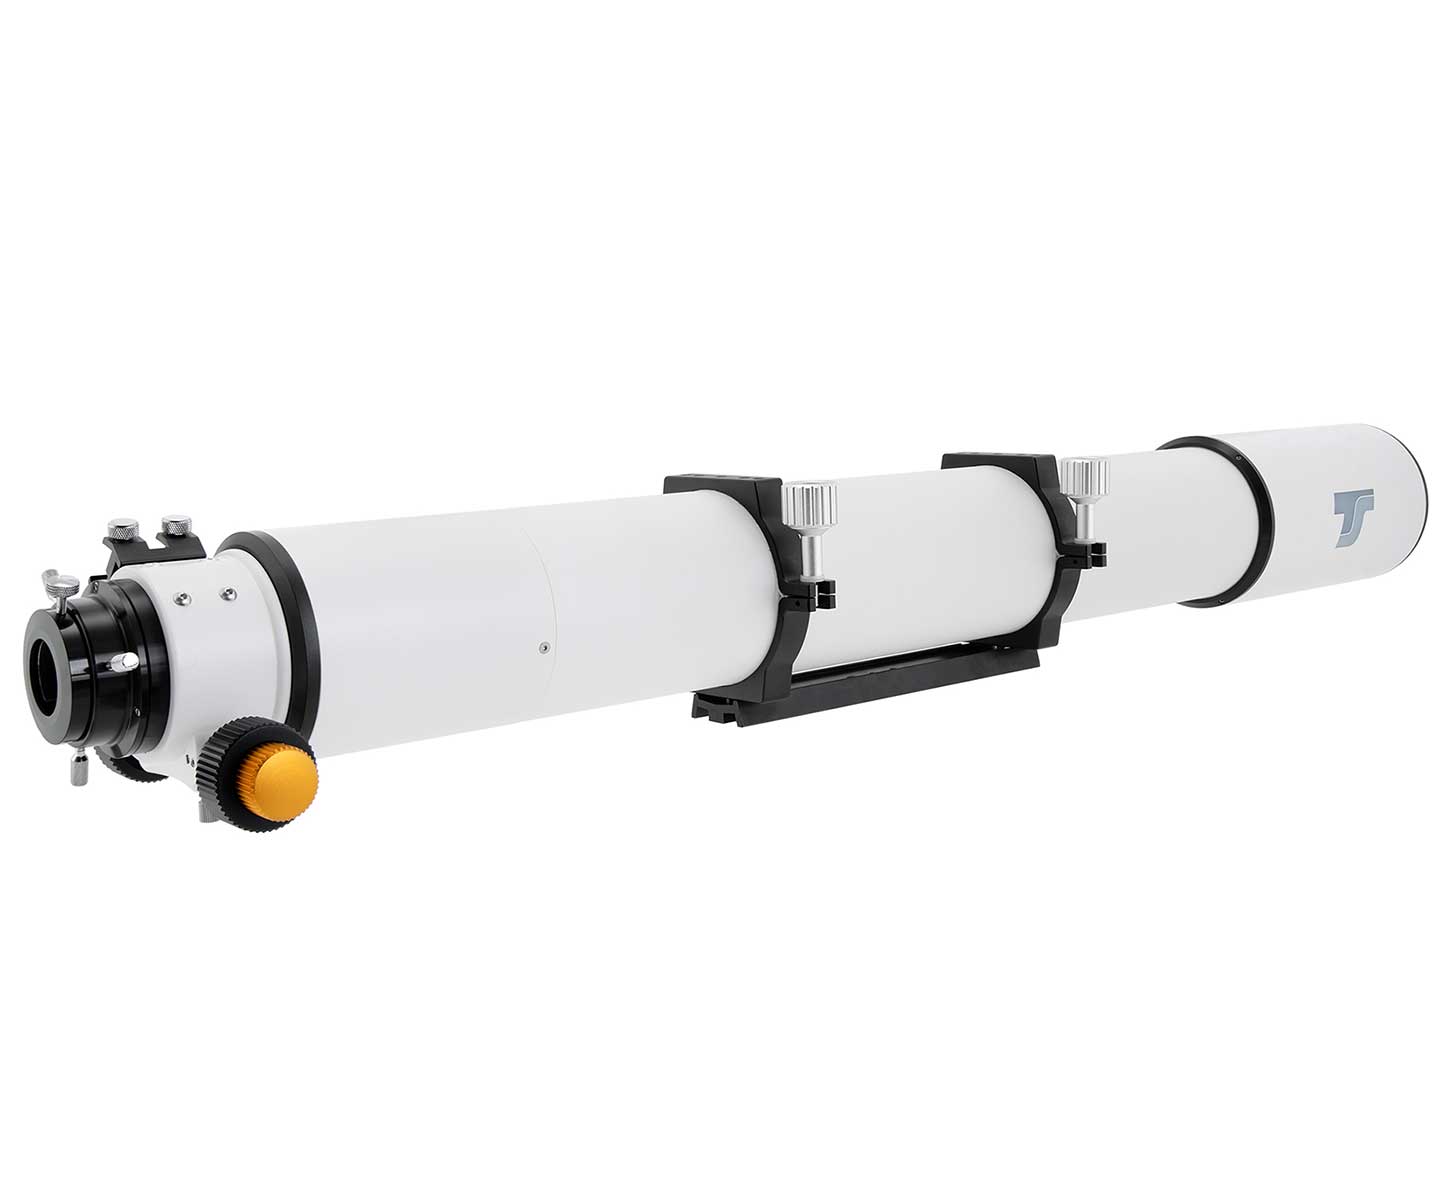  Rifrattore TS-Optics da 102 mm f/11 ED con focheggiatore RAP da 2,5" 